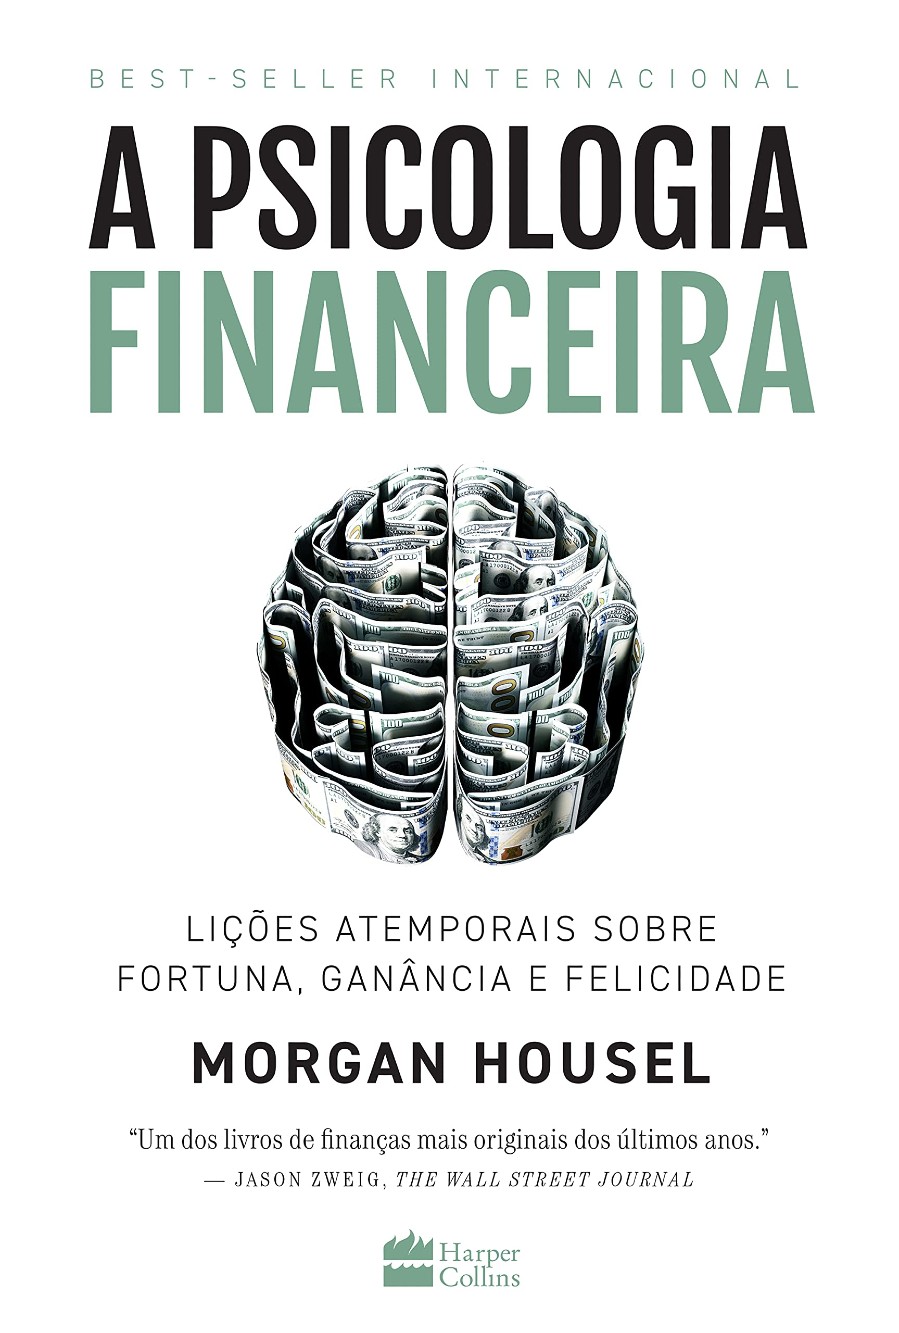 descubra 10 livros para aprender mais sobre finanças e investimentos